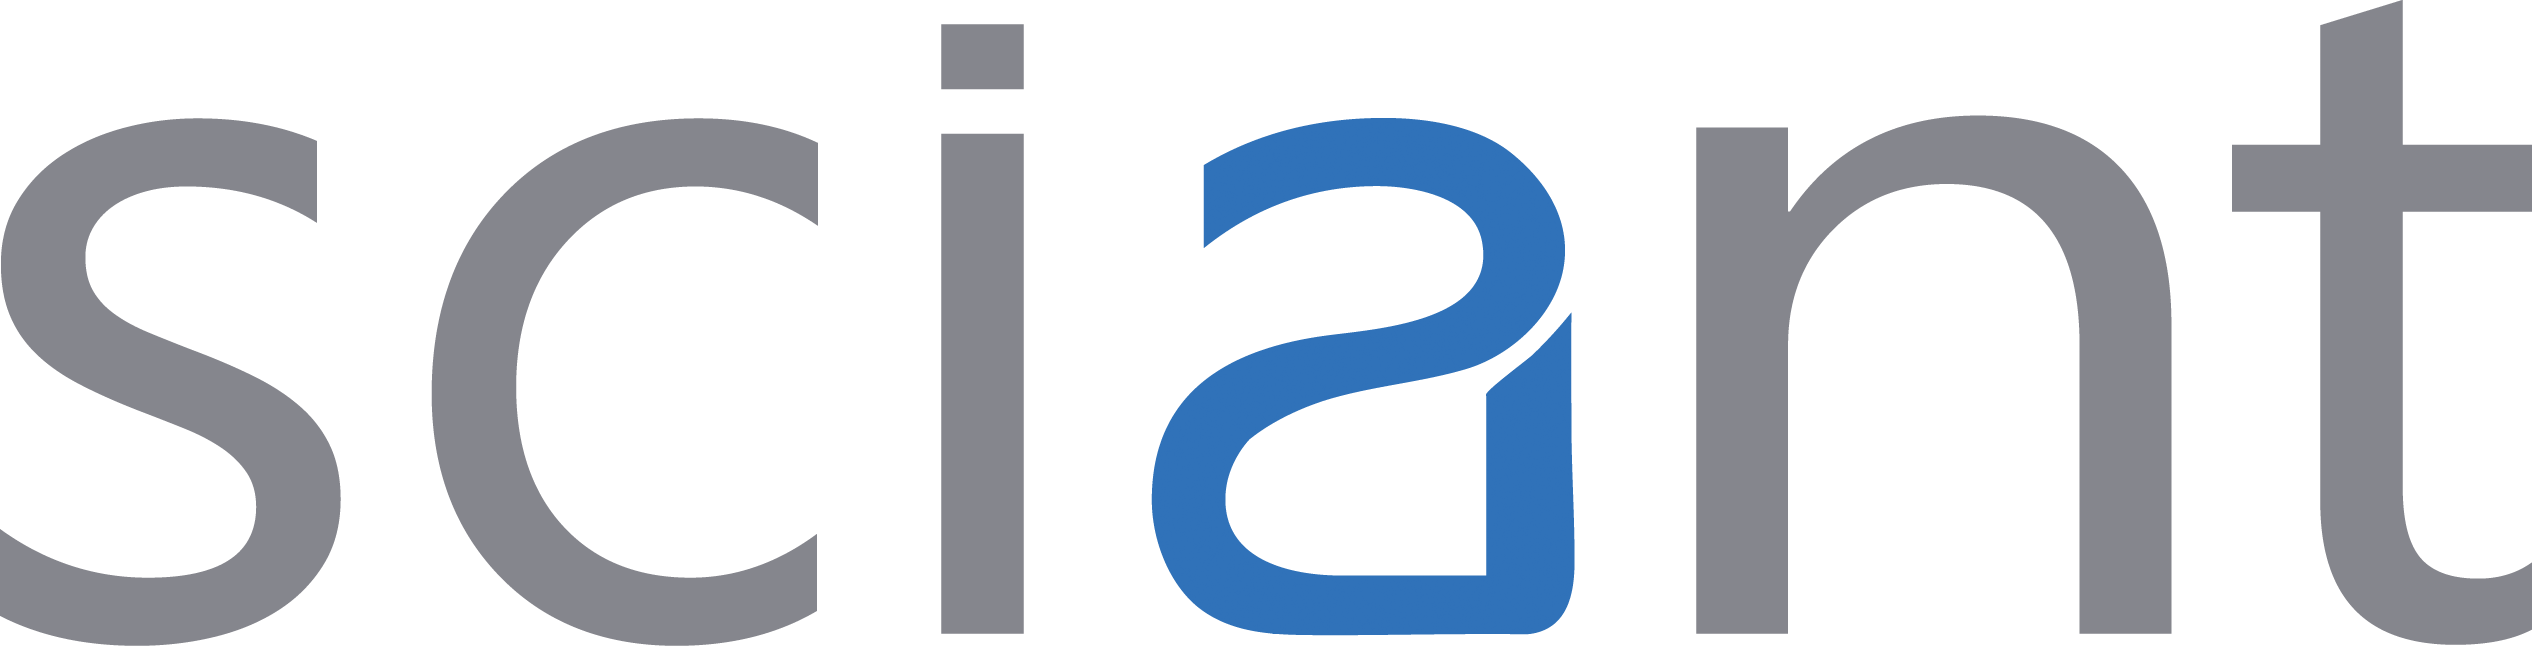 Indigoverge logo